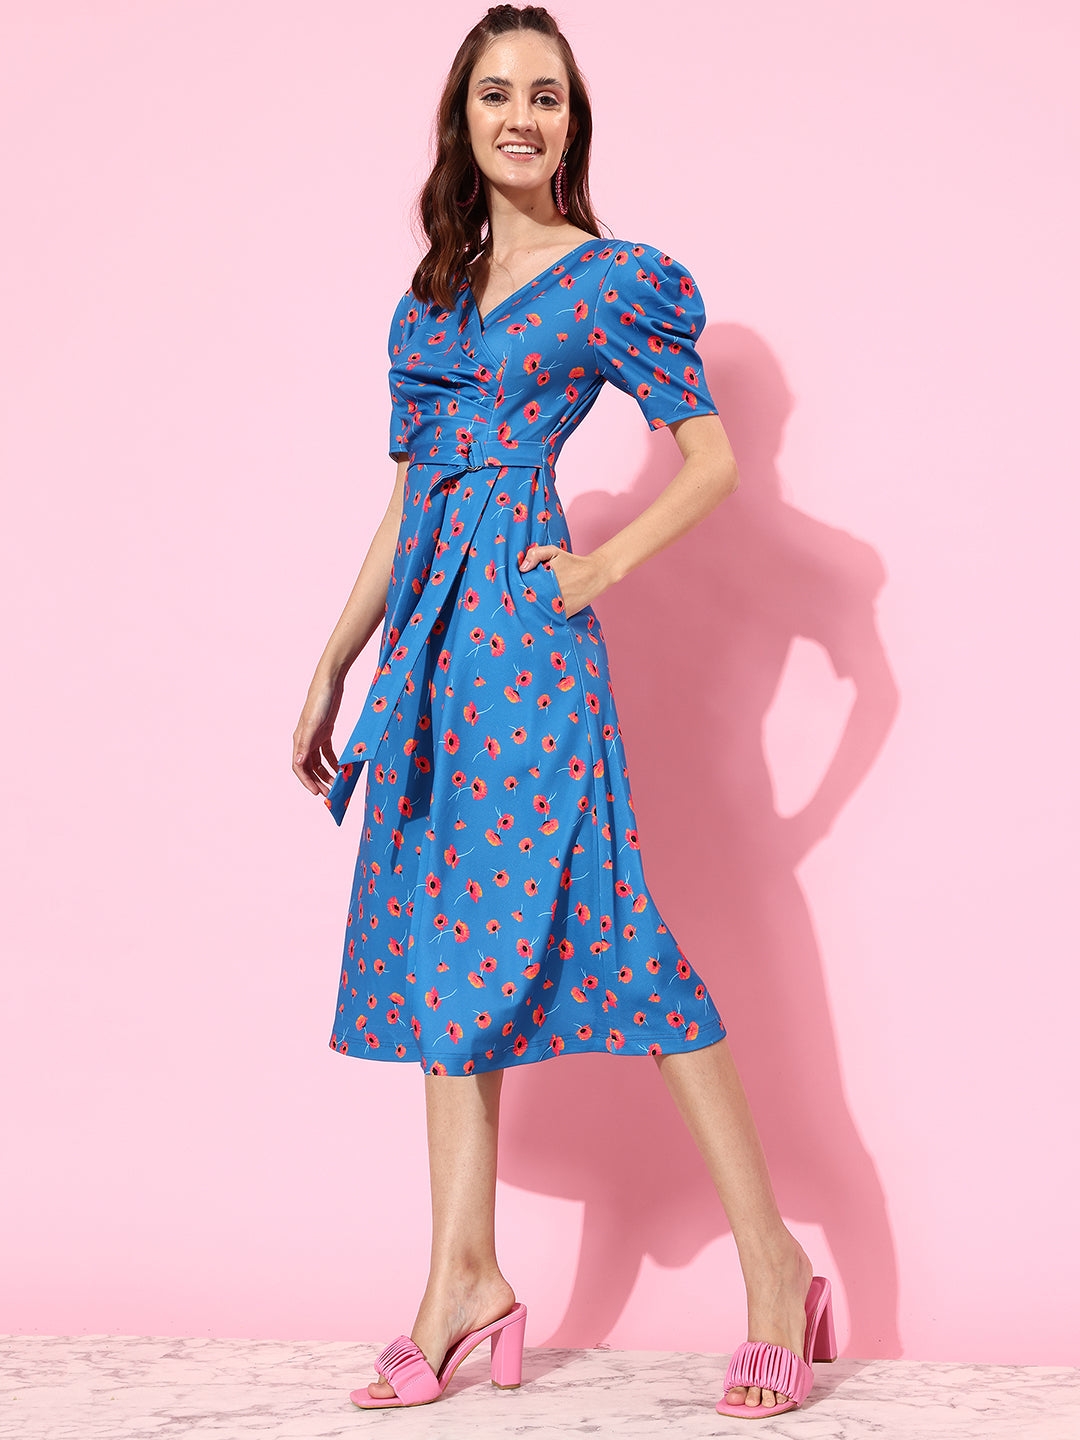 Women's Blue Polyester Casualwear Fit & Flare Dress